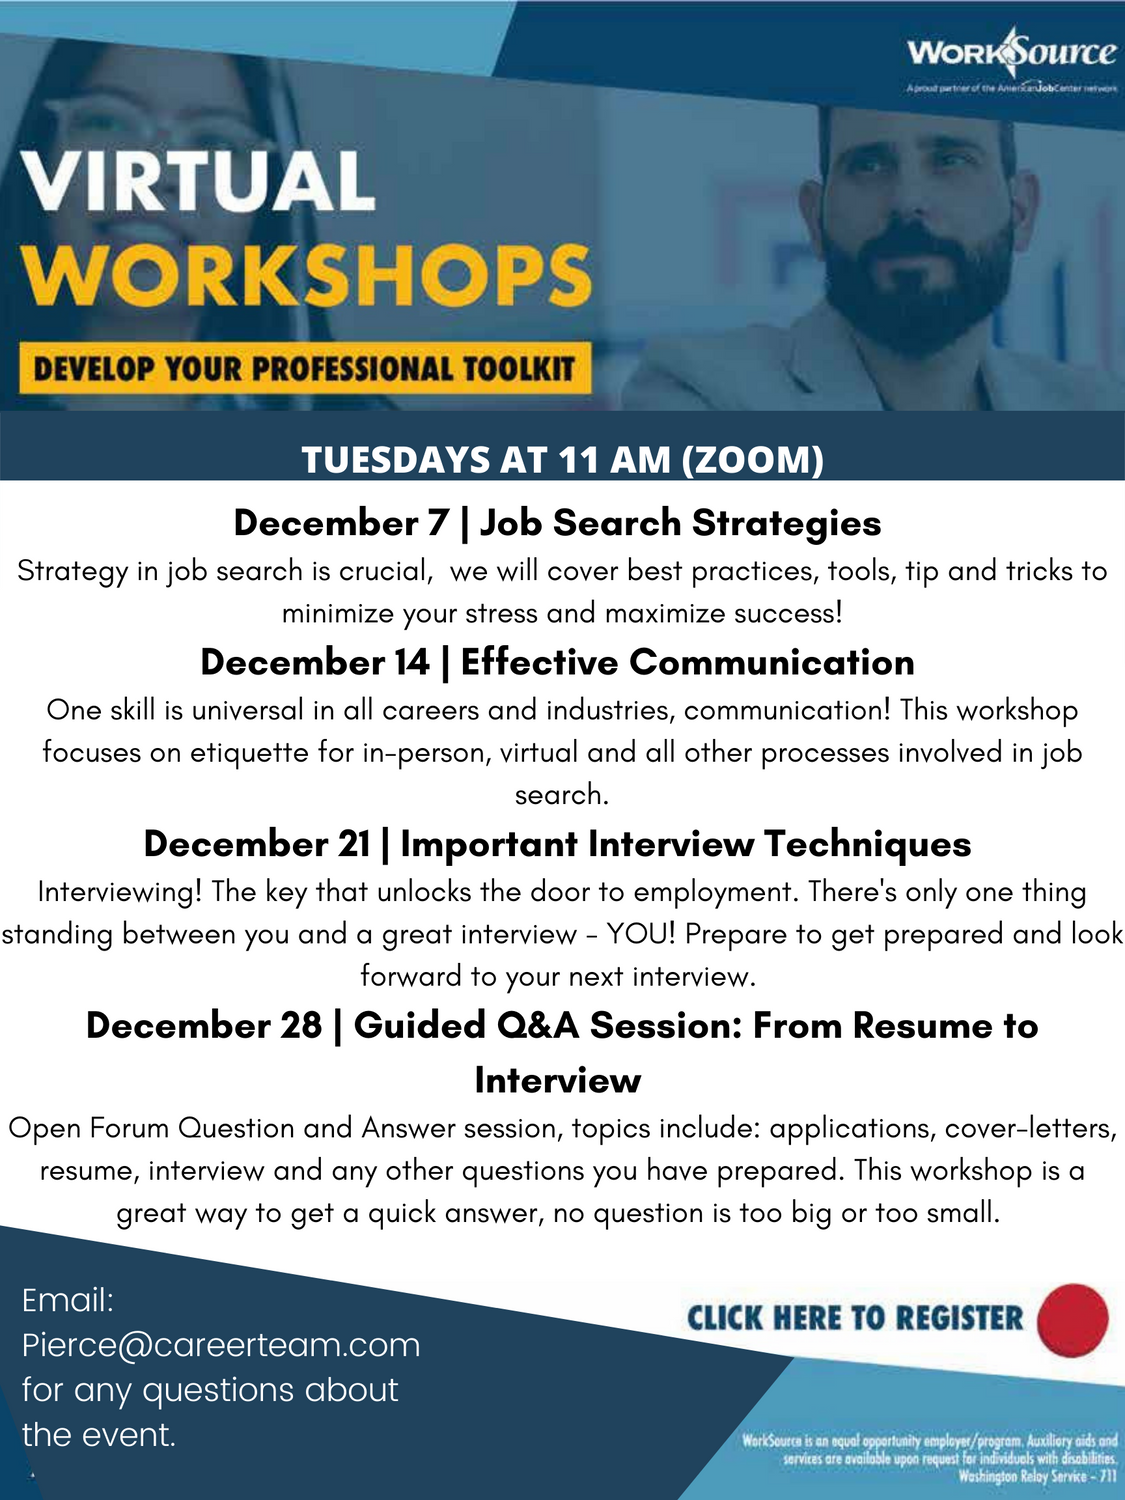 Virtual Career Workshops - December 2021 2